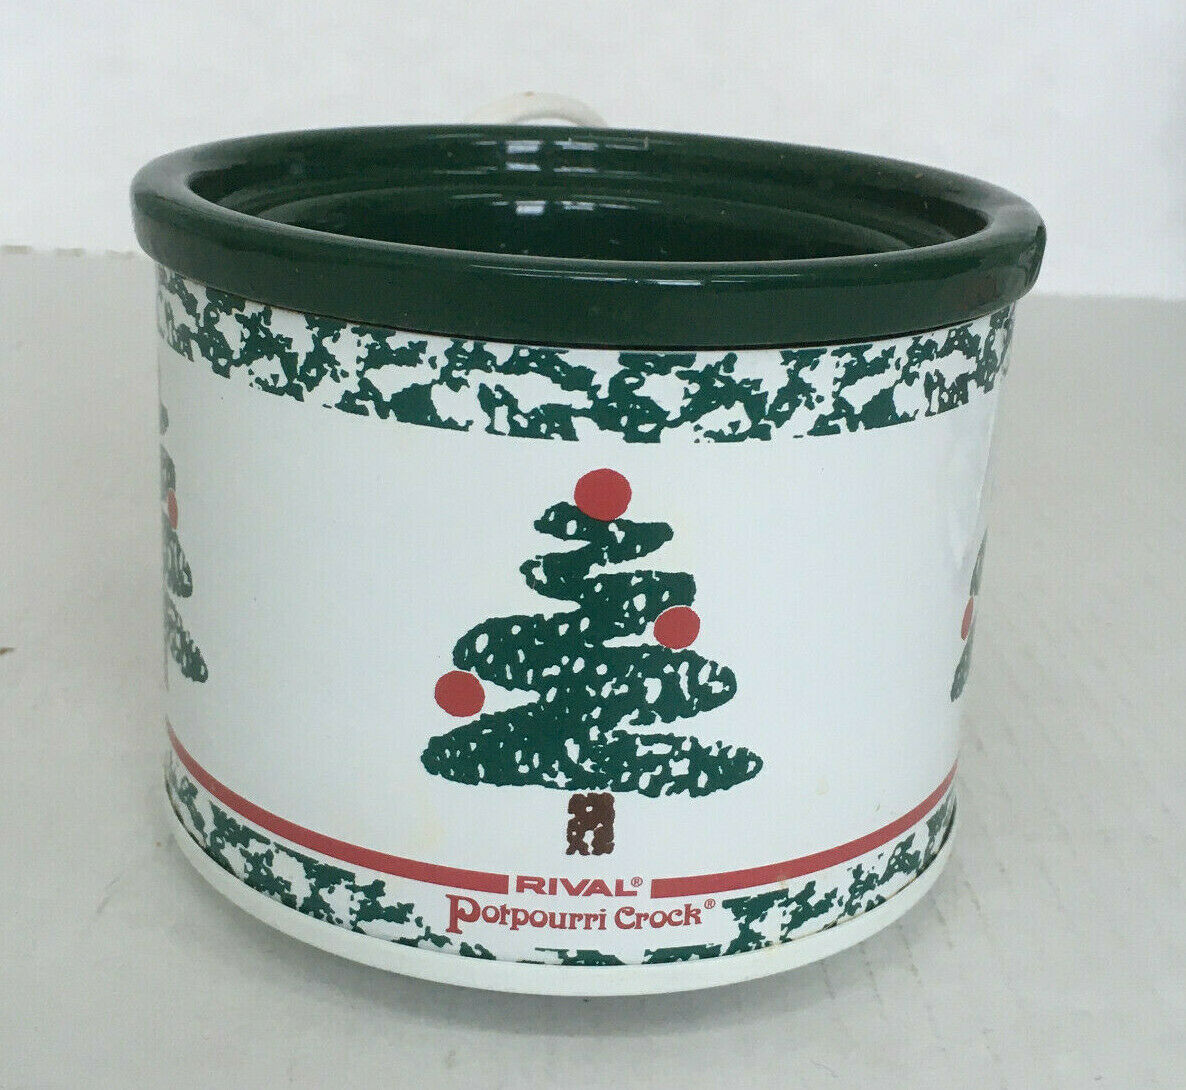 Electric Potpourri Pot Porcelain No Lid Container With